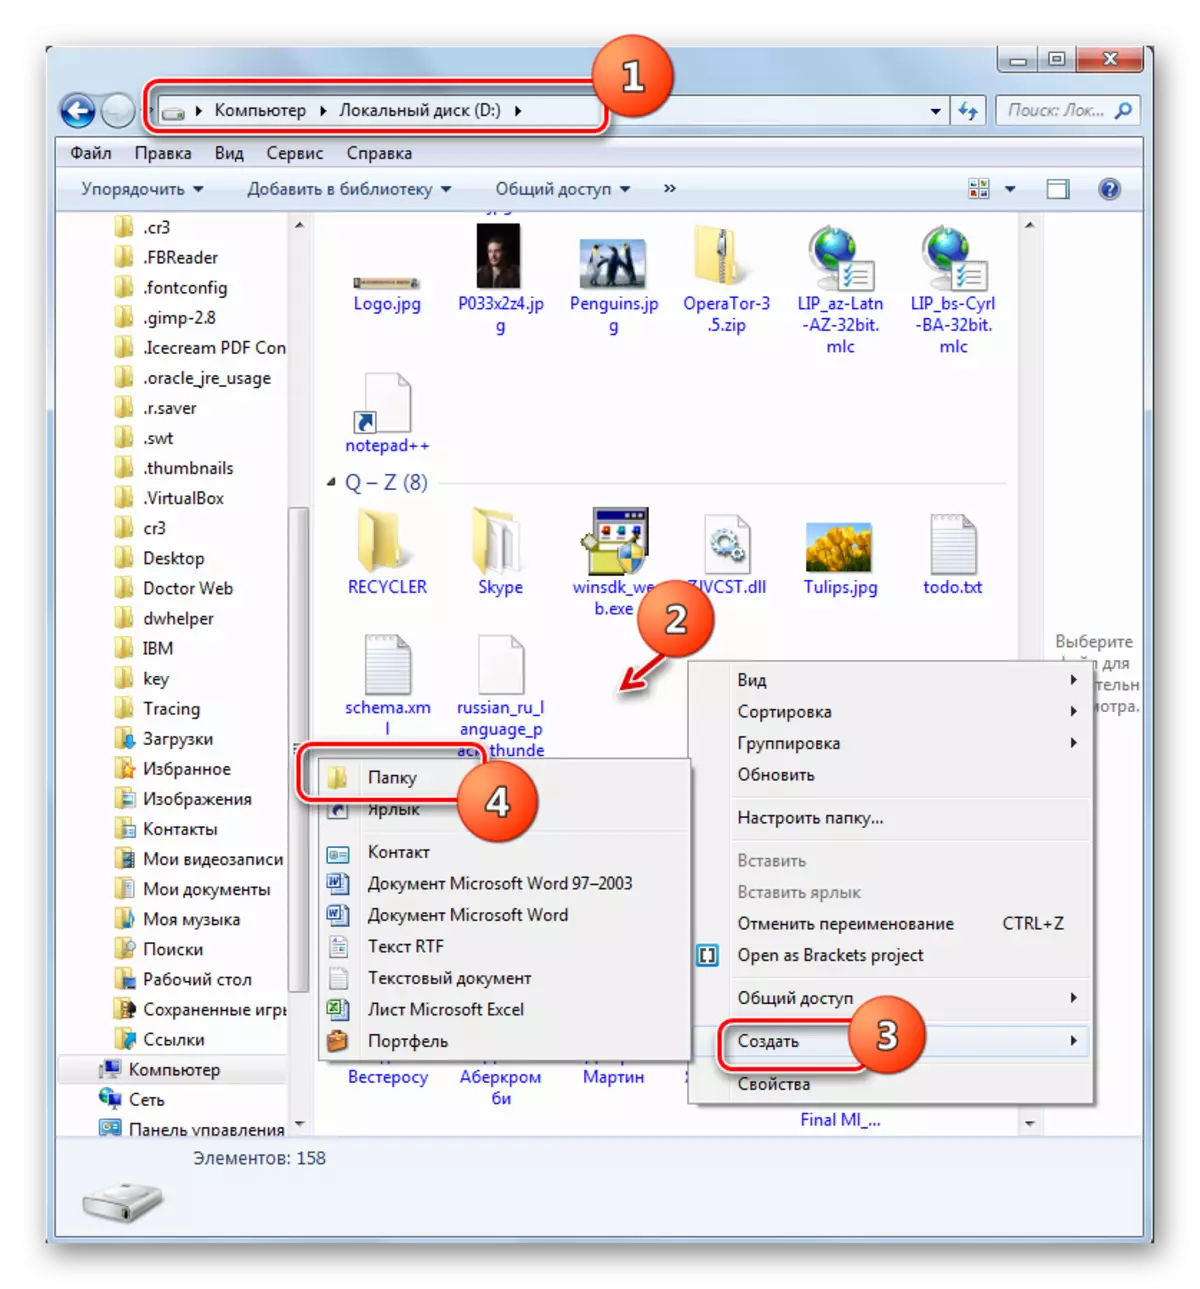 Allez à la création d'un dossier sur le disque D dans le menu contextuel du conducteur Windows 7 dans Windows 7